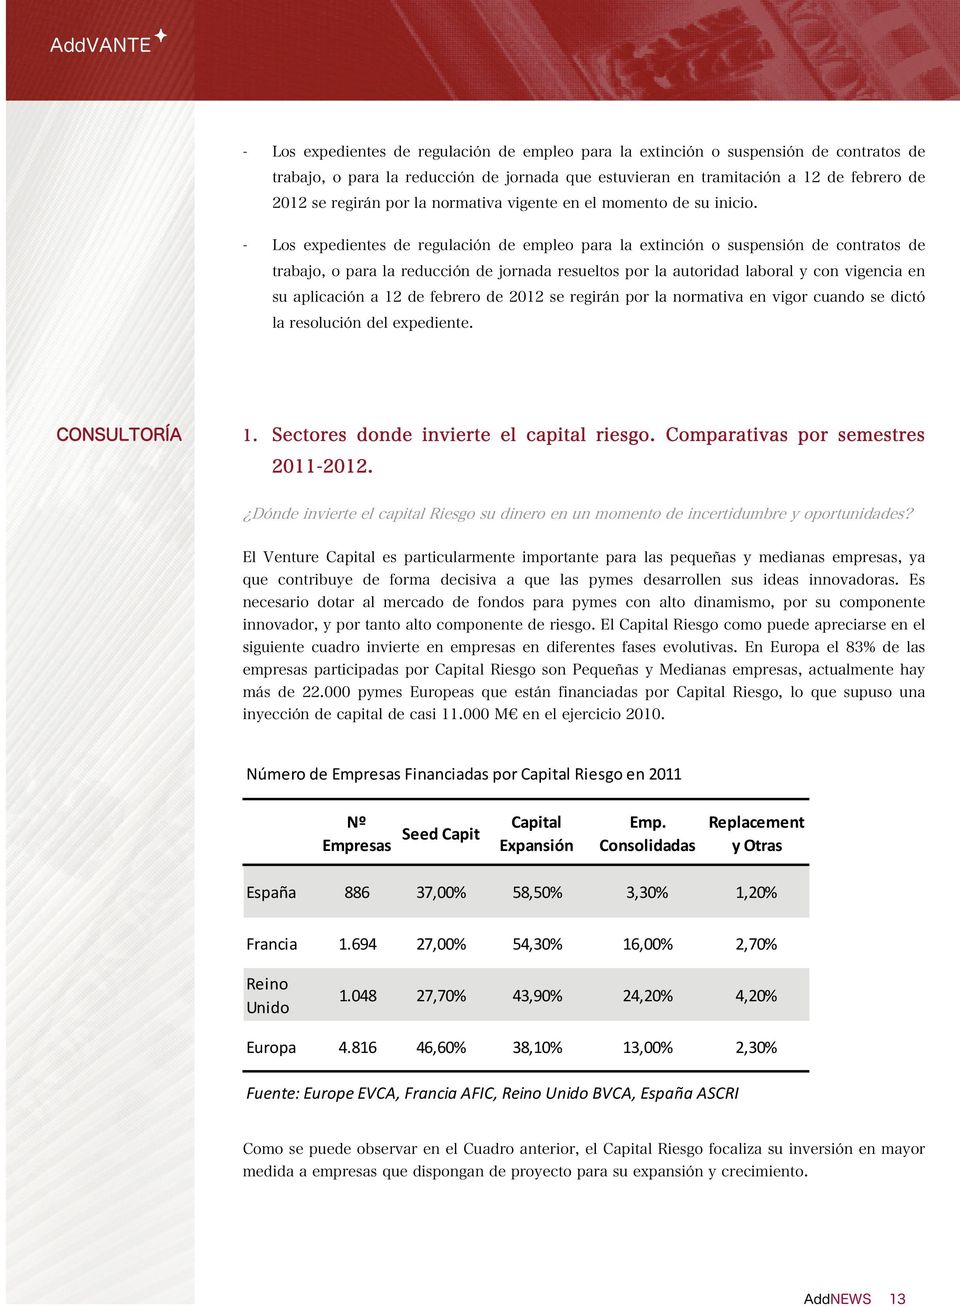 Consolidadas Replacement y Otras España 886 37,00% 58,50% 3,30% 1,20% Francia 1.